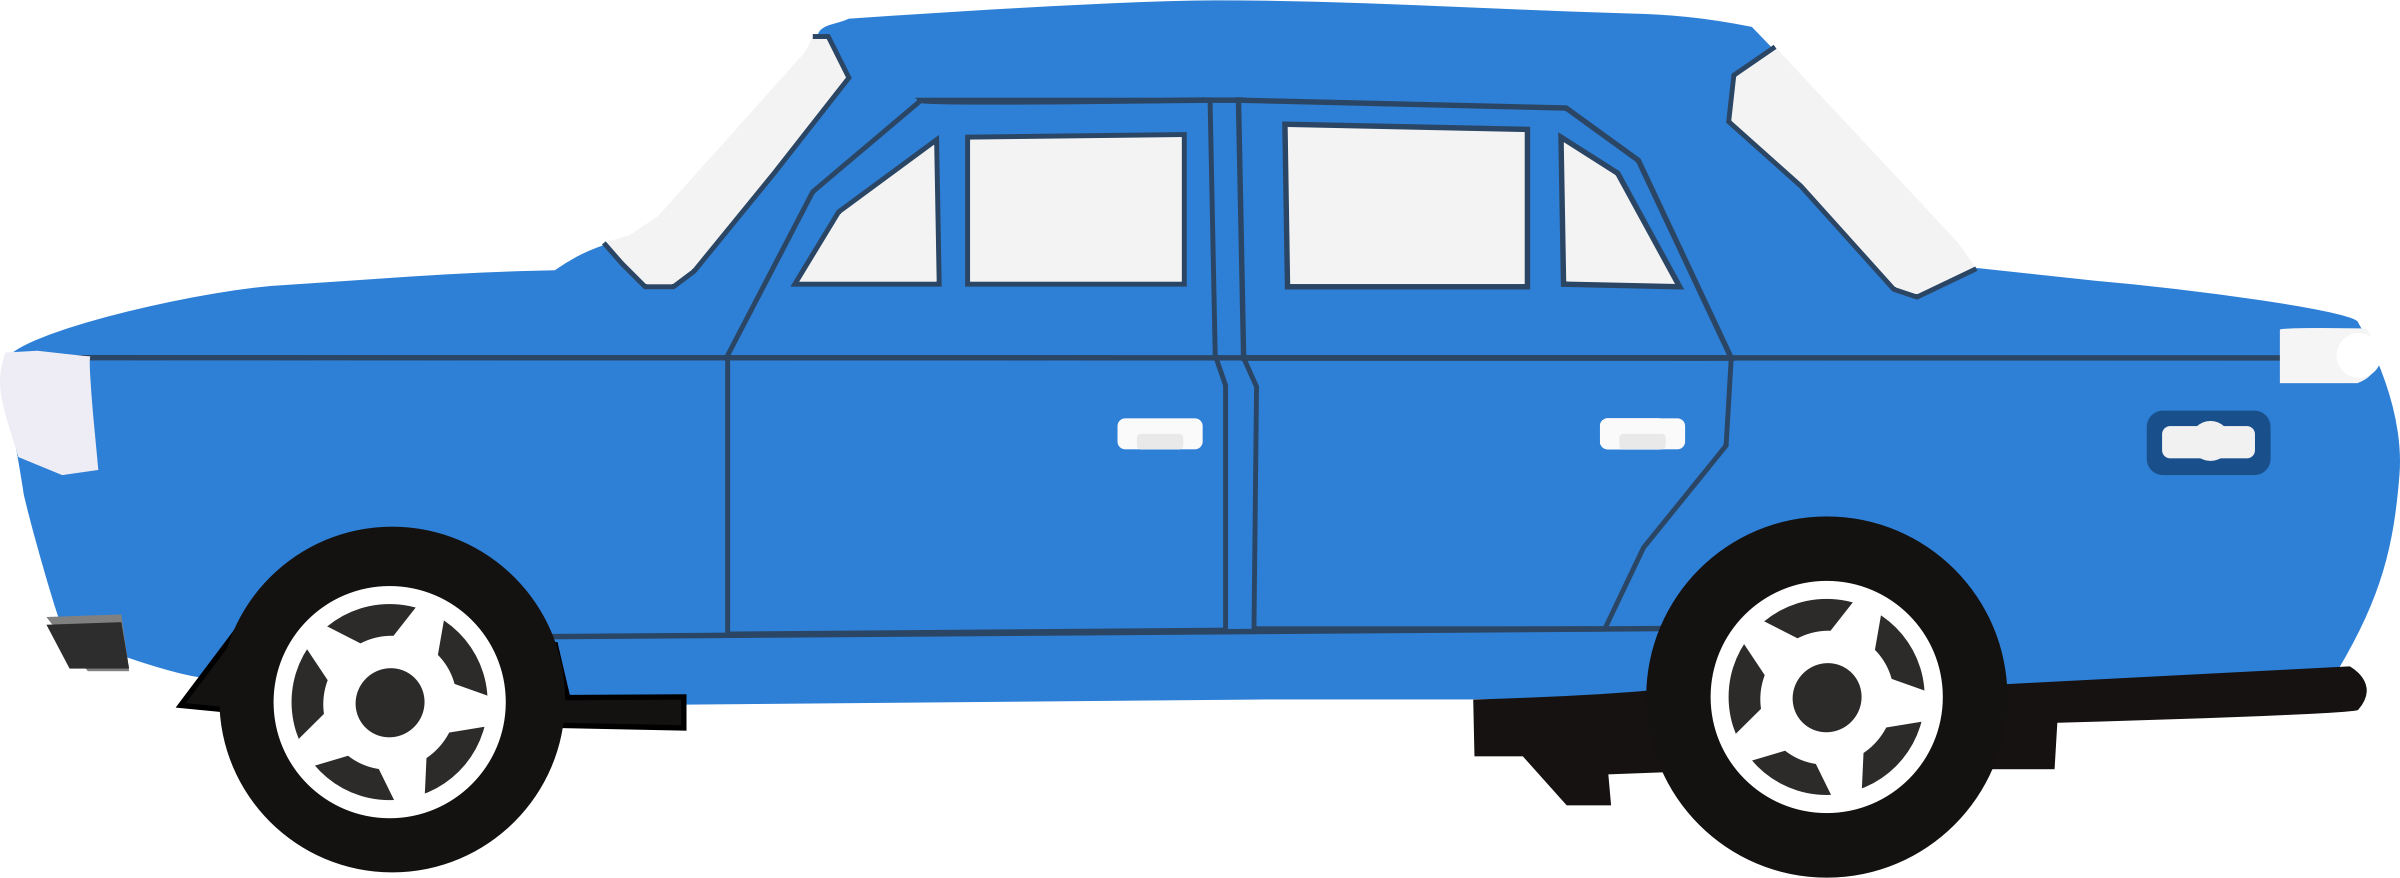 Clipart car blue. Big image png